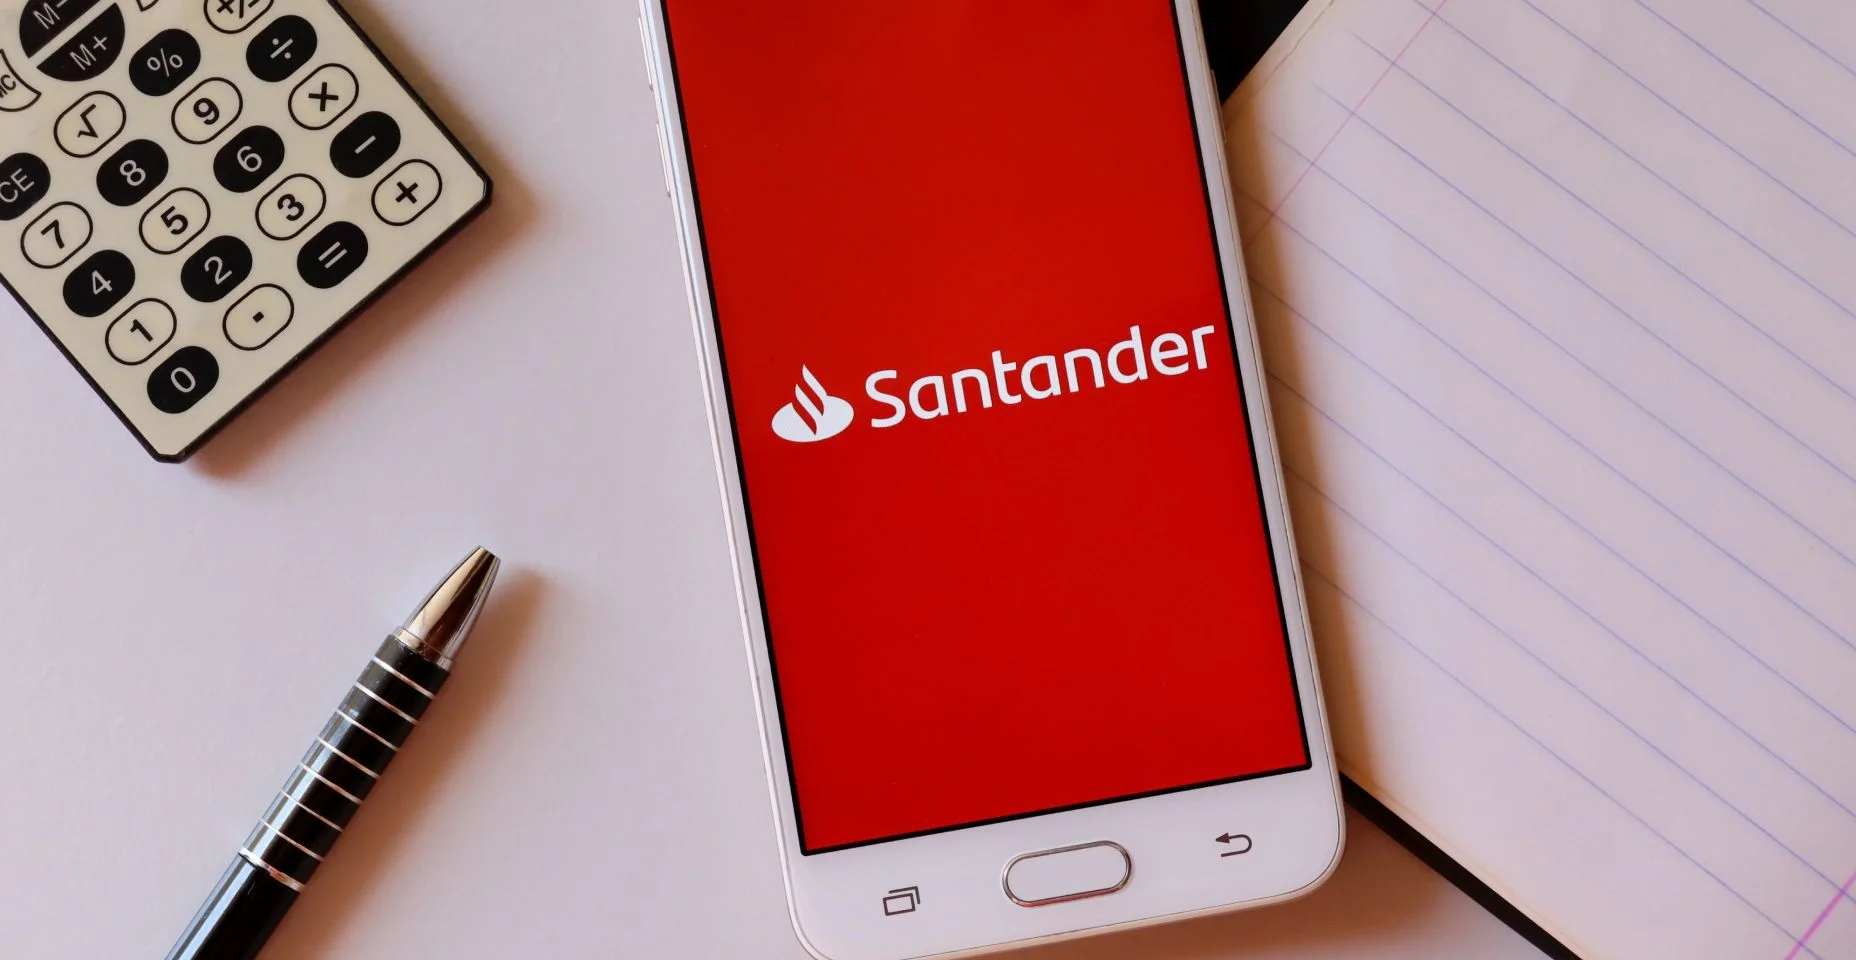 Aplicativo do banco Santander na tela do smartphone na mesa de escritório com calculadora e caneta. Conceito de internet banking do Santander.